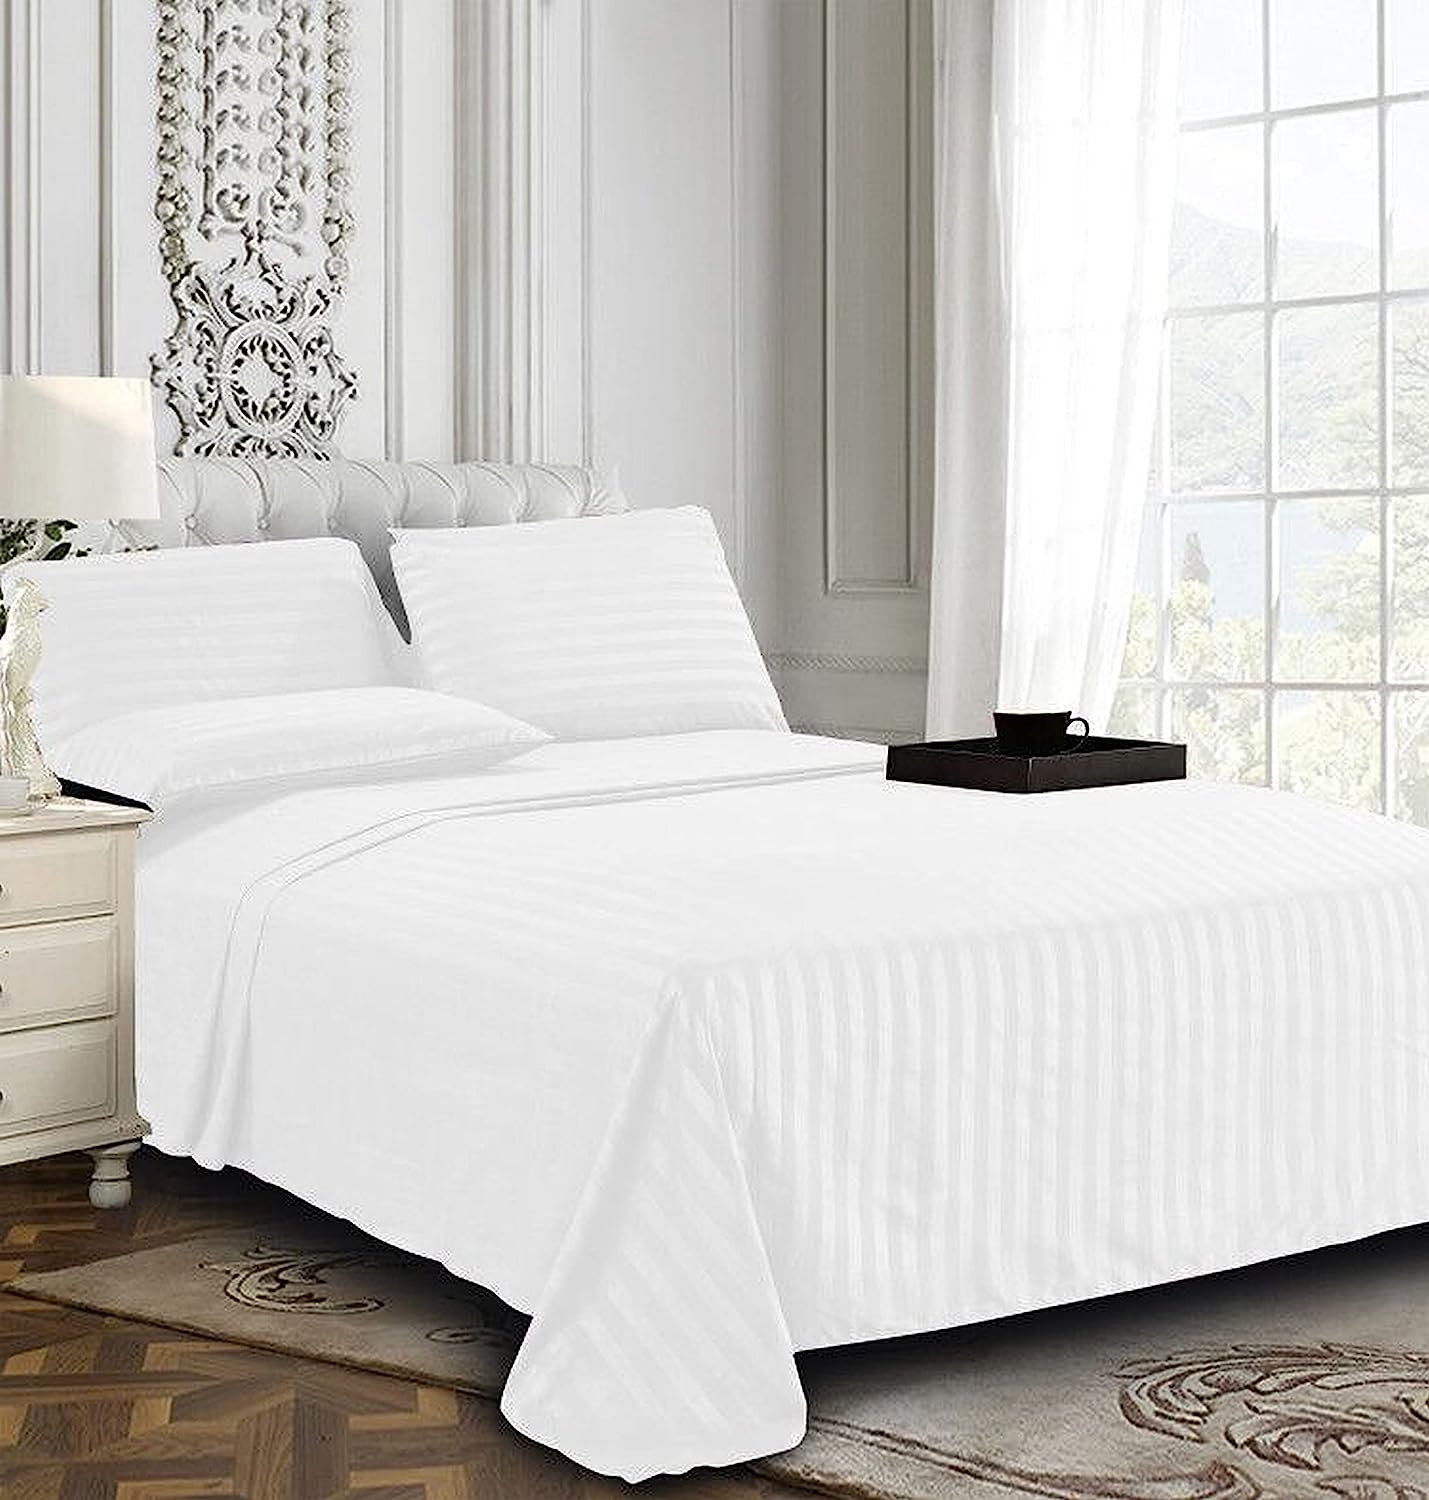 Satin Stripe Double Bed Sheet White Colour